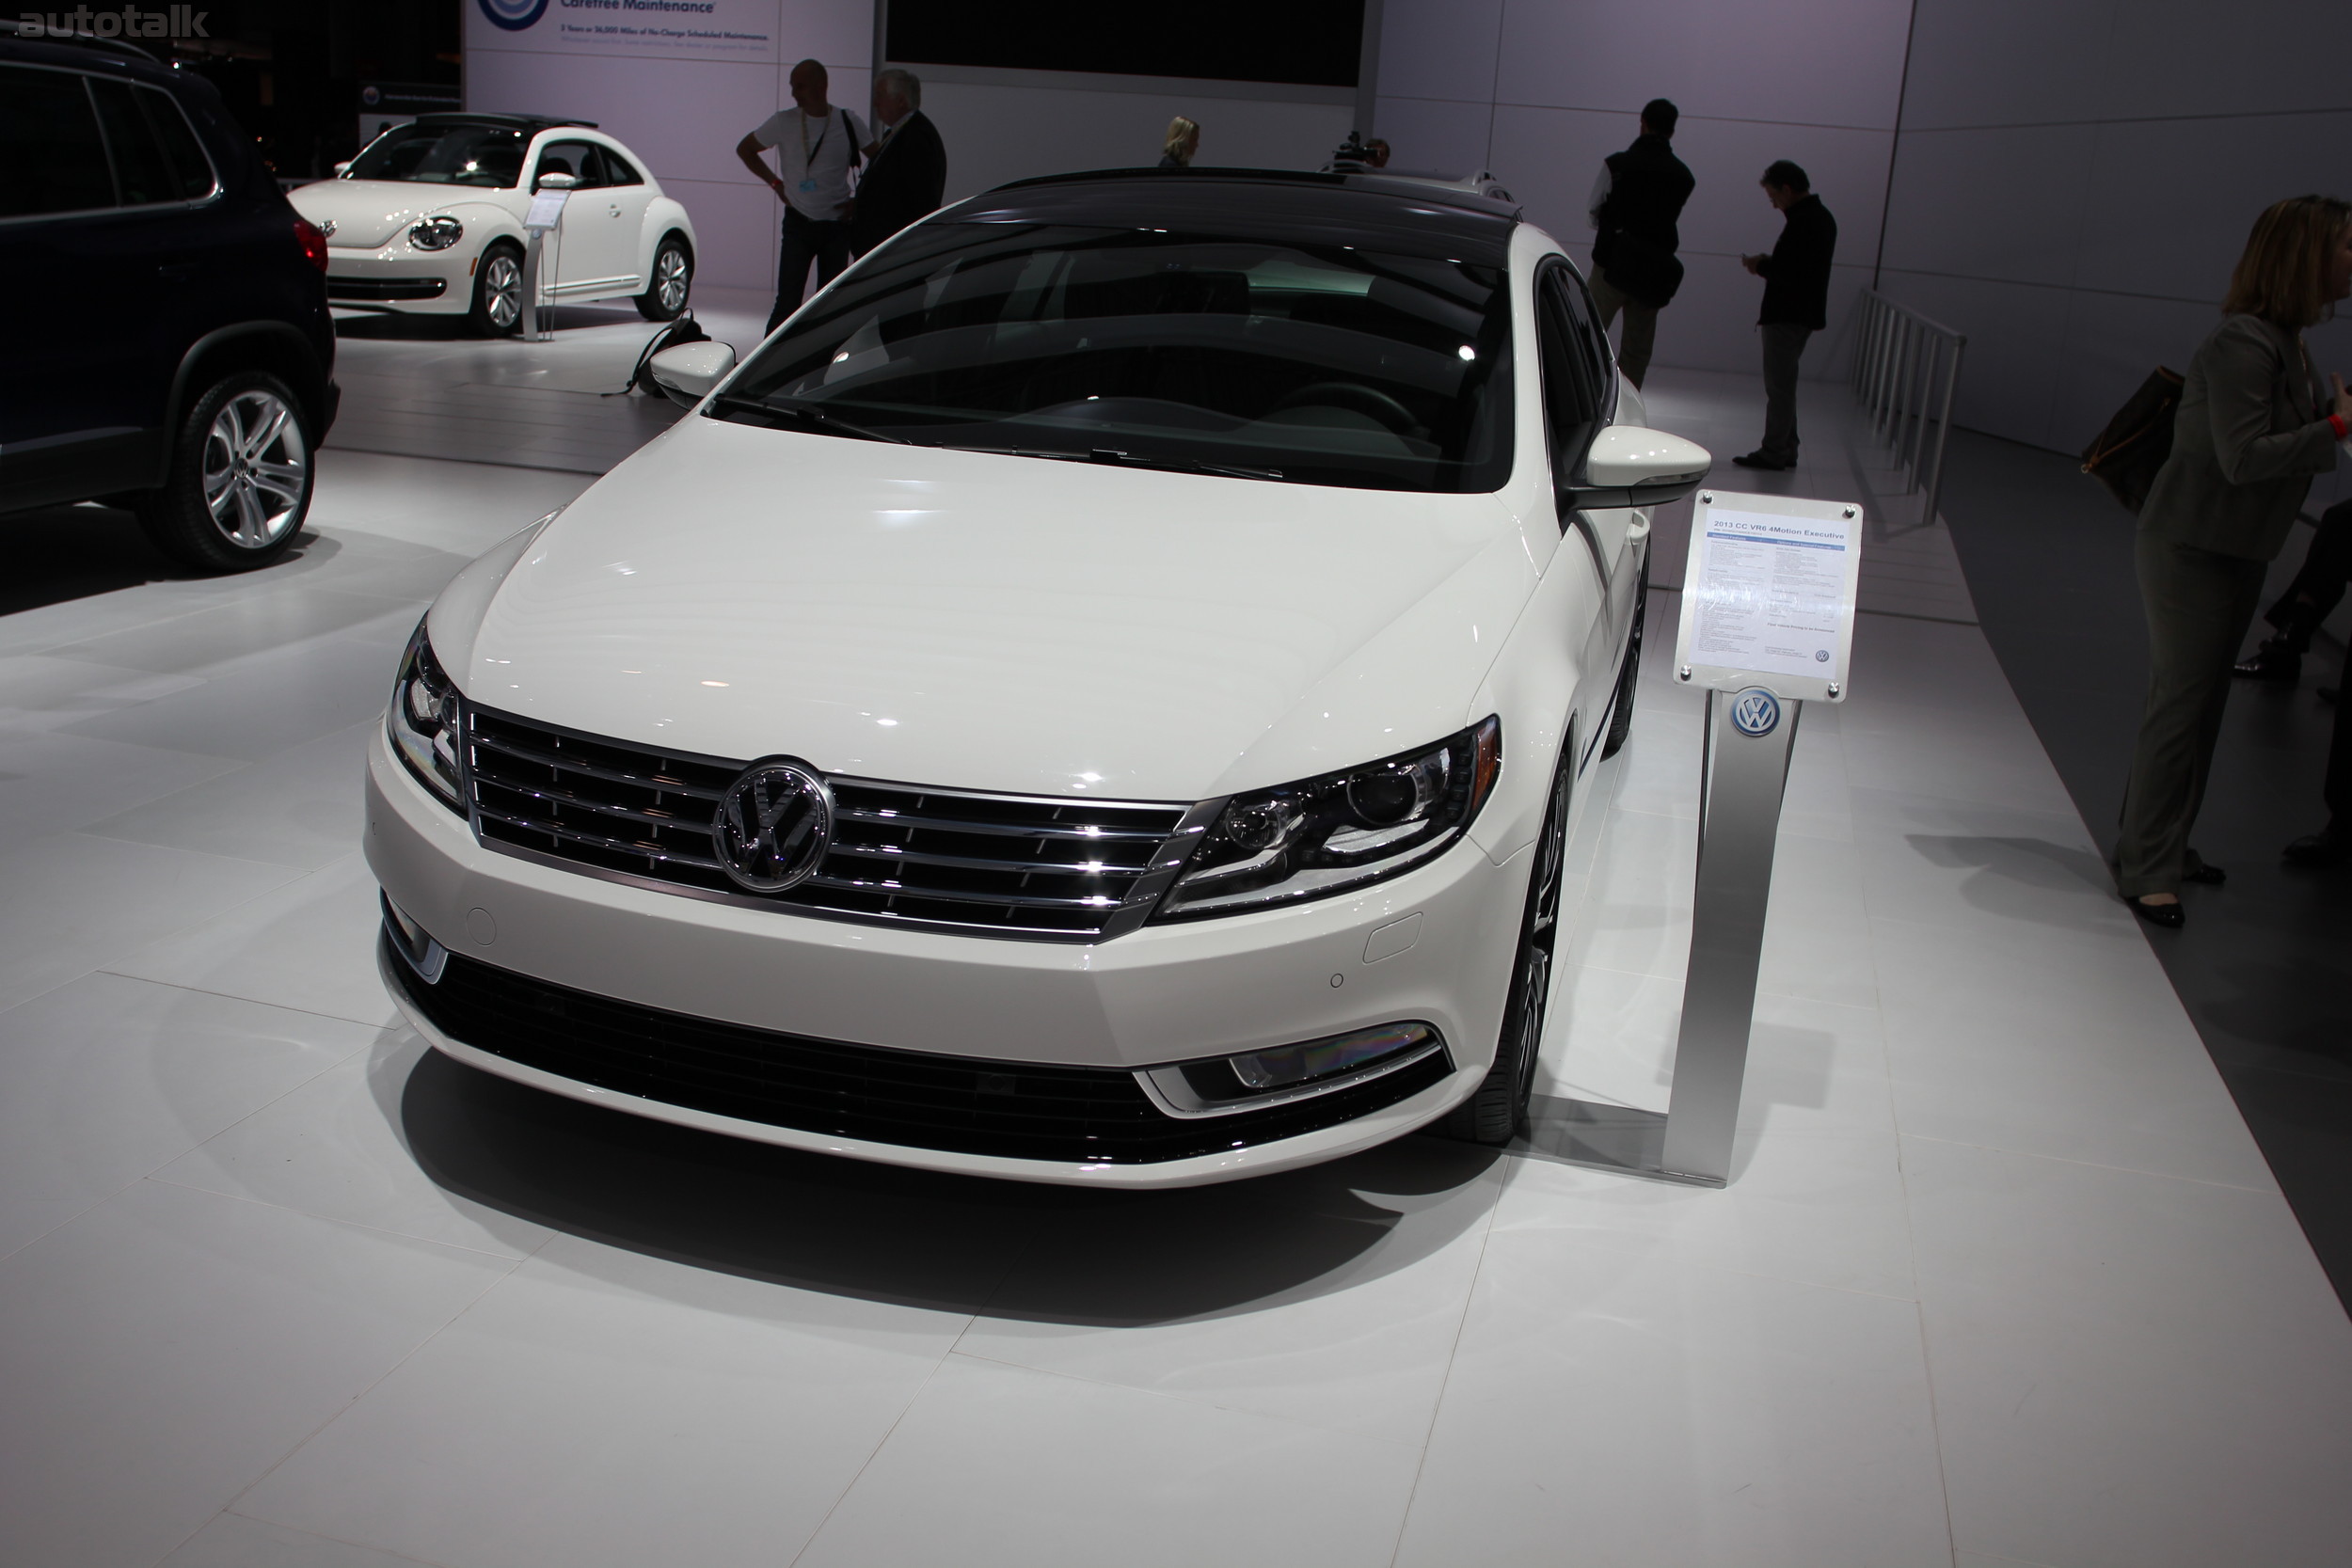 Volkswagen Booth NYIAS 2012